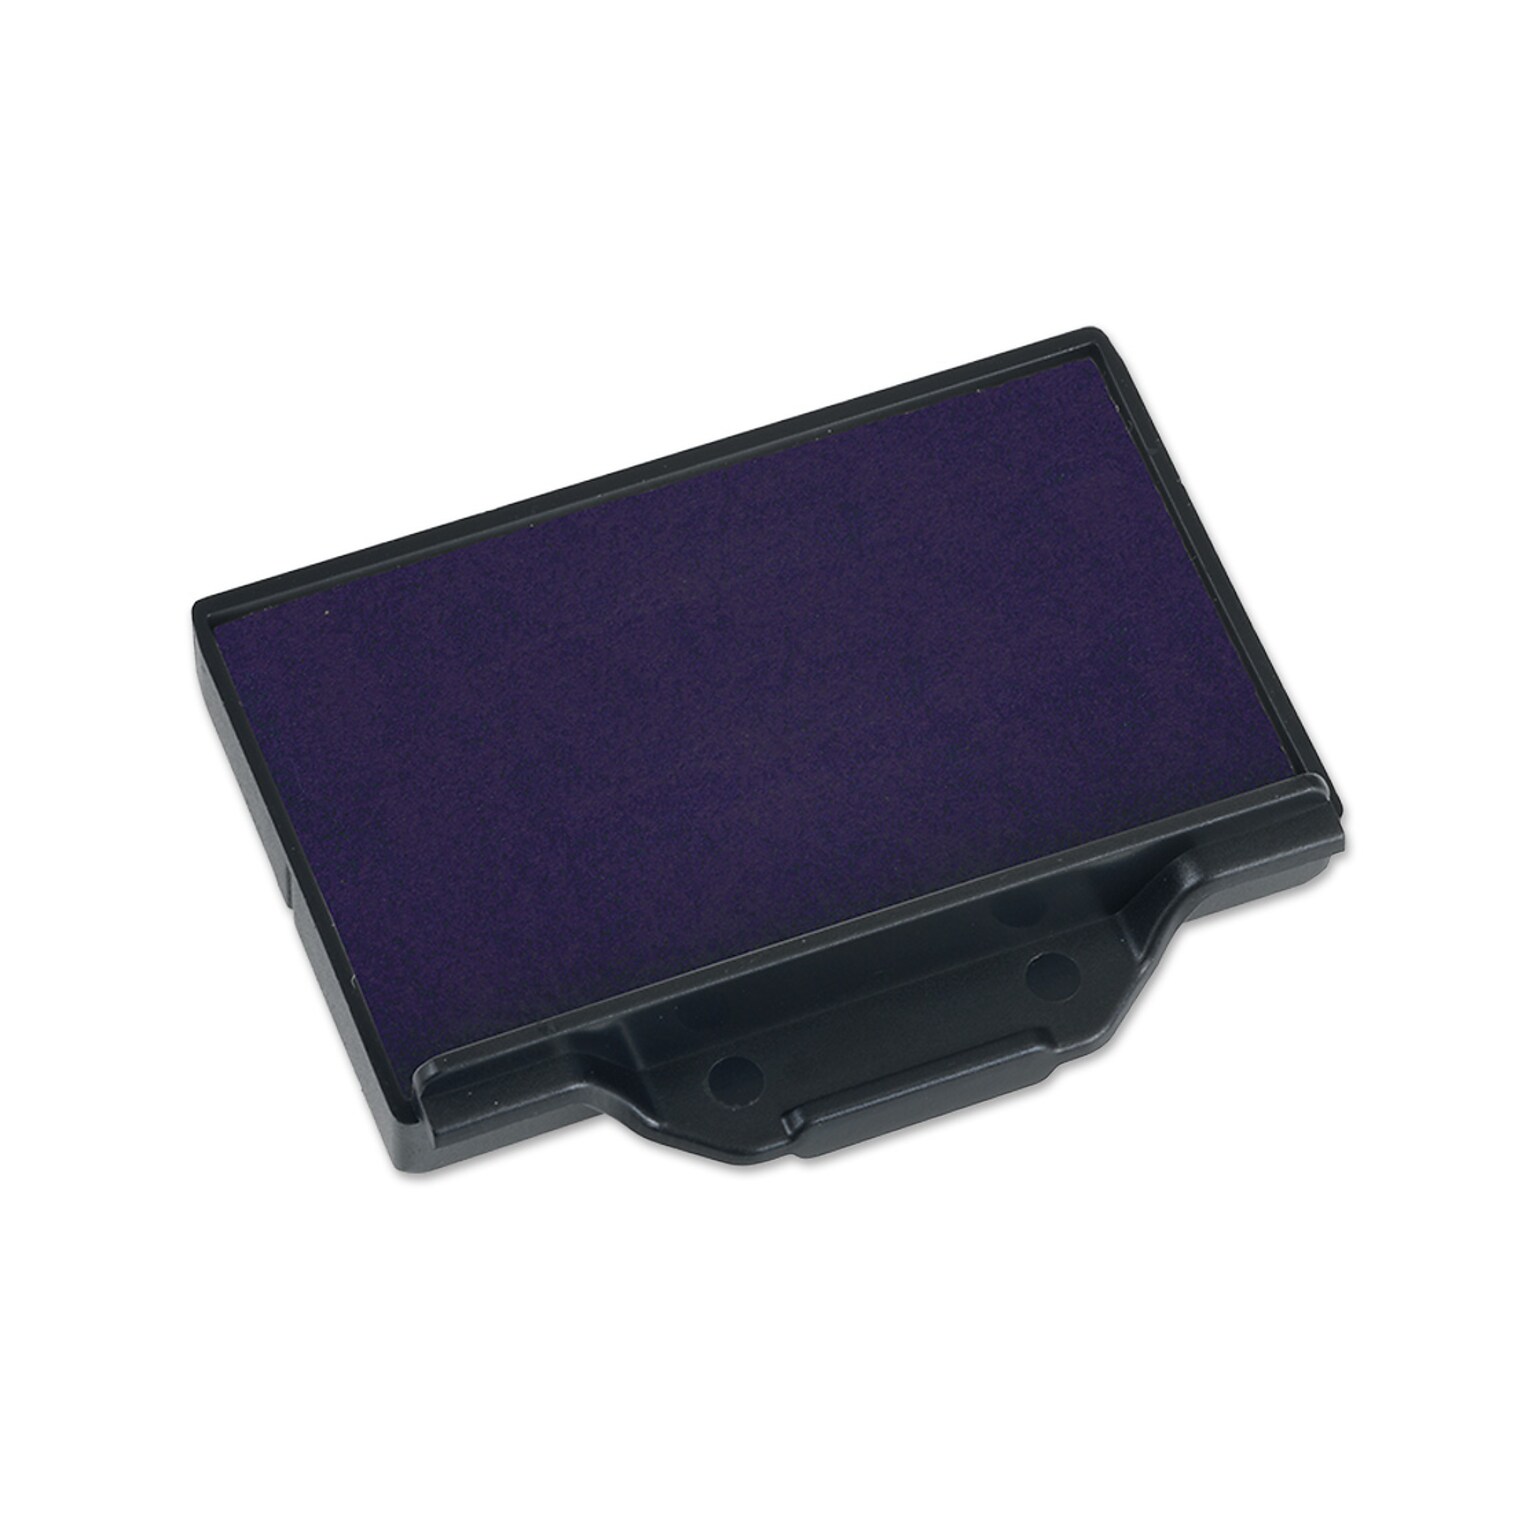 2000 Plus® Pro Replacement Pad 2360D, Violet